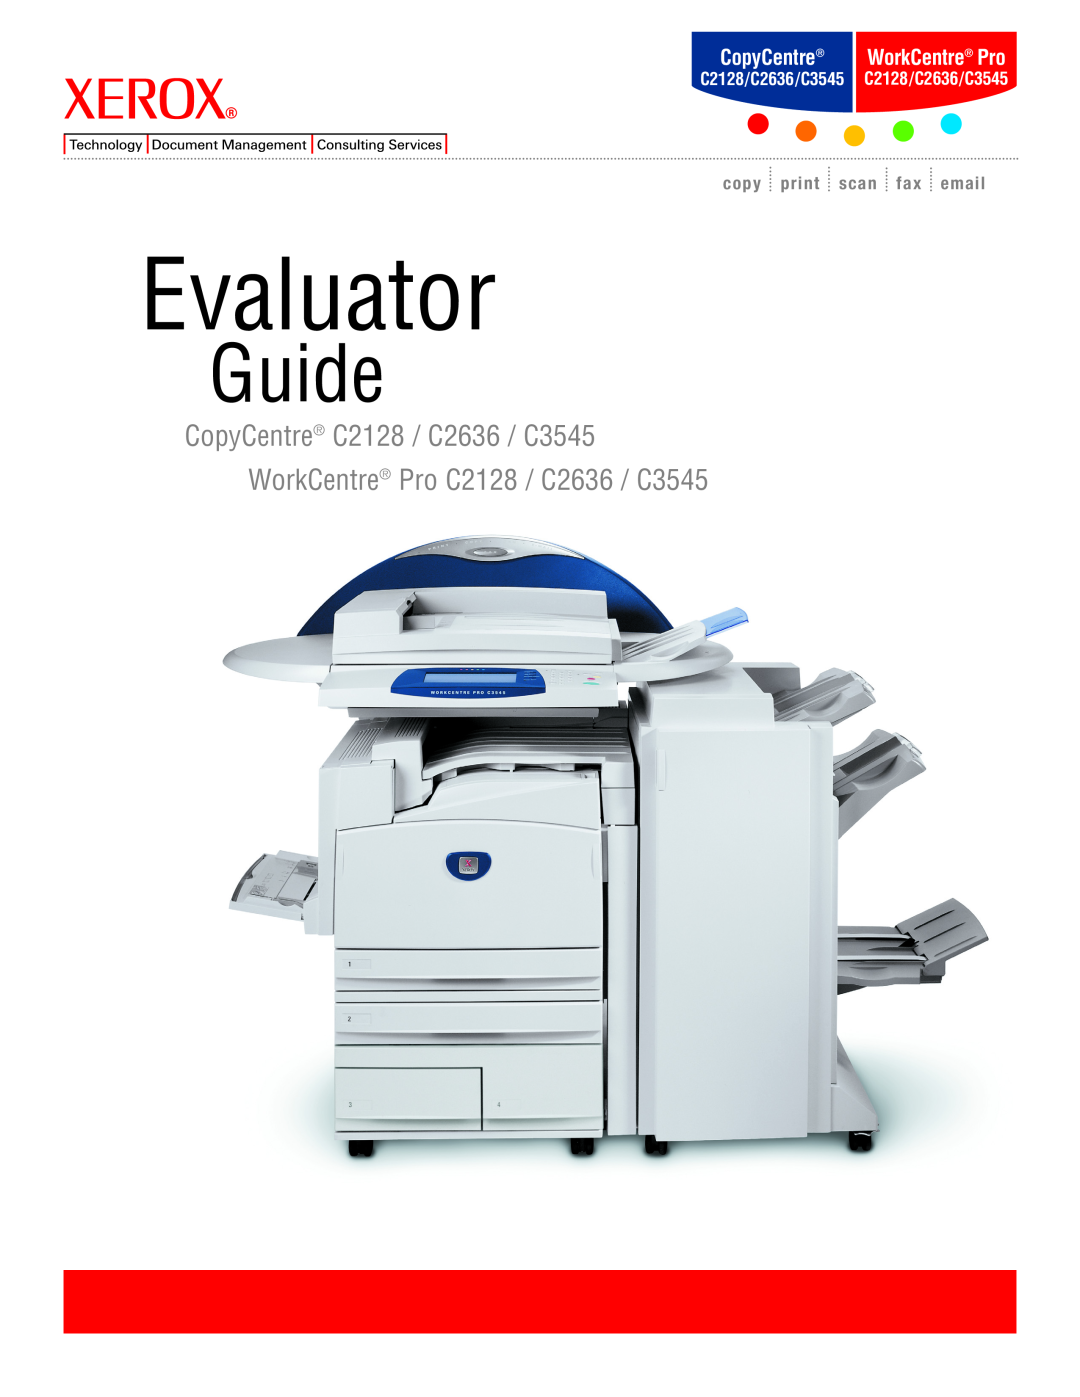 Xerox manual Evaluator, Guide, CopyCentre C2128 / C2636 / C3545 WorkCentre Pro C2128 / C2636 / C3545 